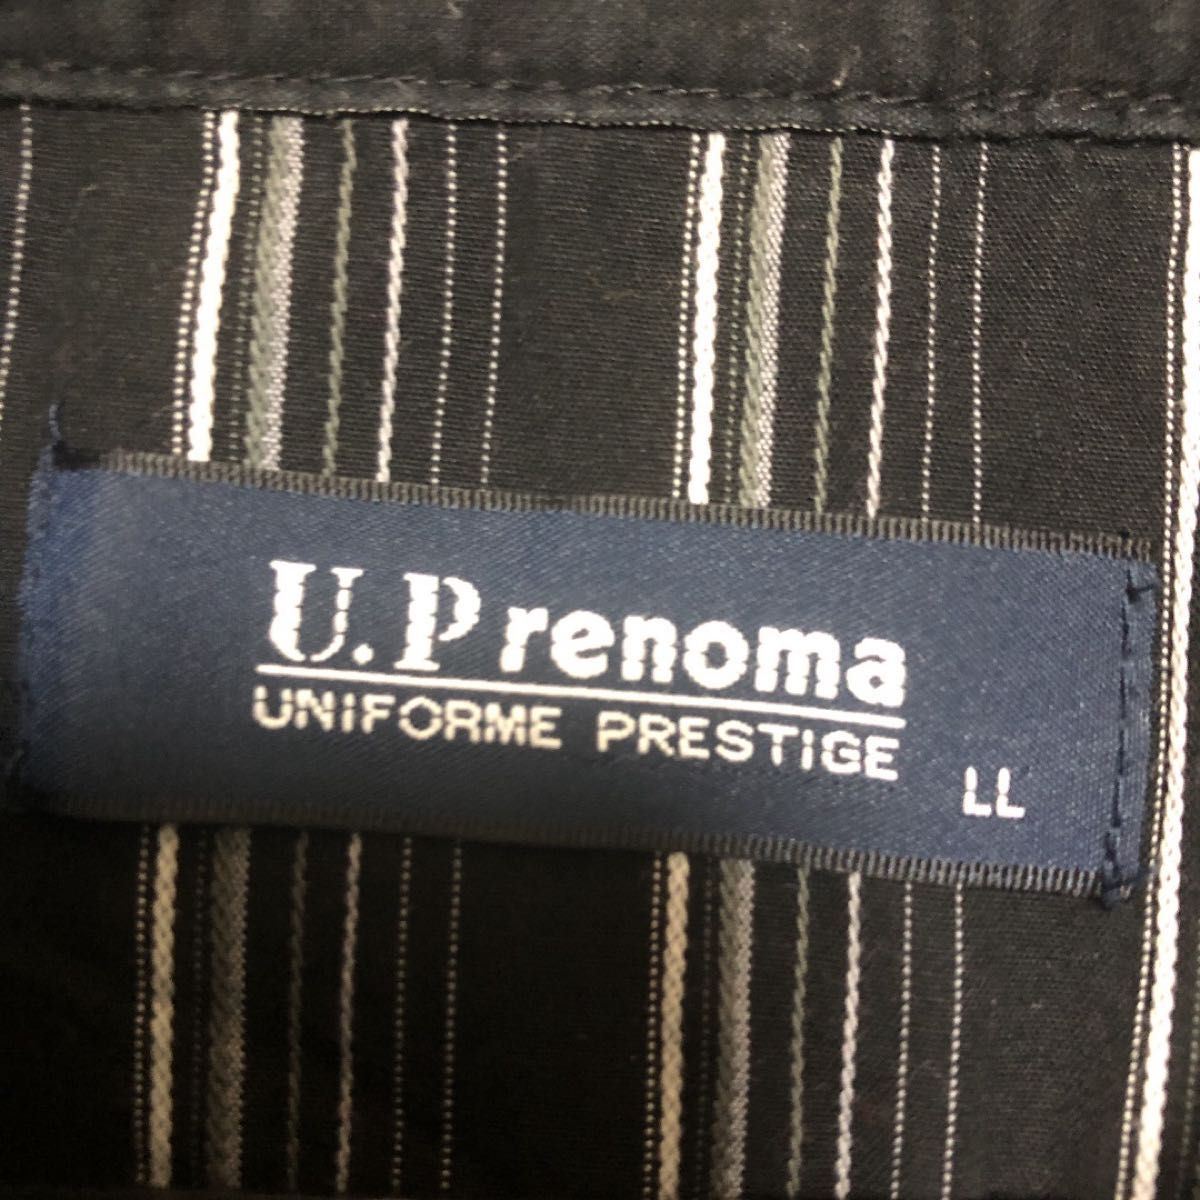 U.P renoma 美濃屋　ハーフジップ重ね着風ポロシャツ　カットソートップス　LL 大きいサイズ